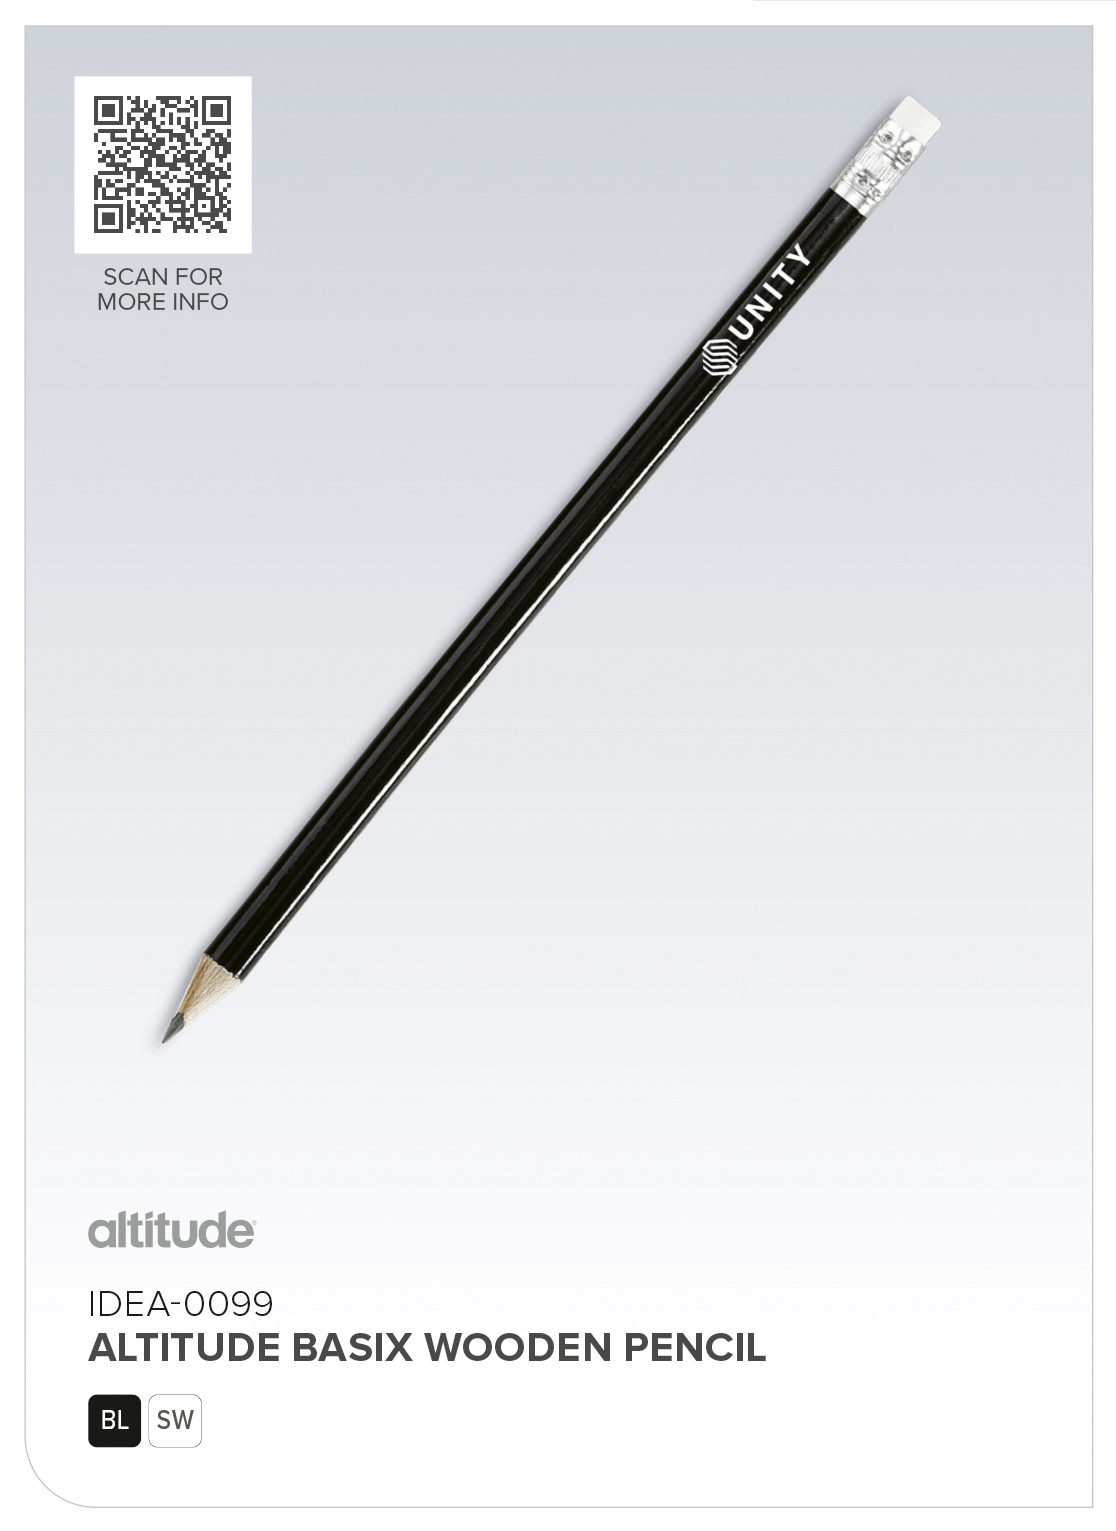 IDEA-0099 - Altitude Basix Wooden Pencil - Catalogue Image